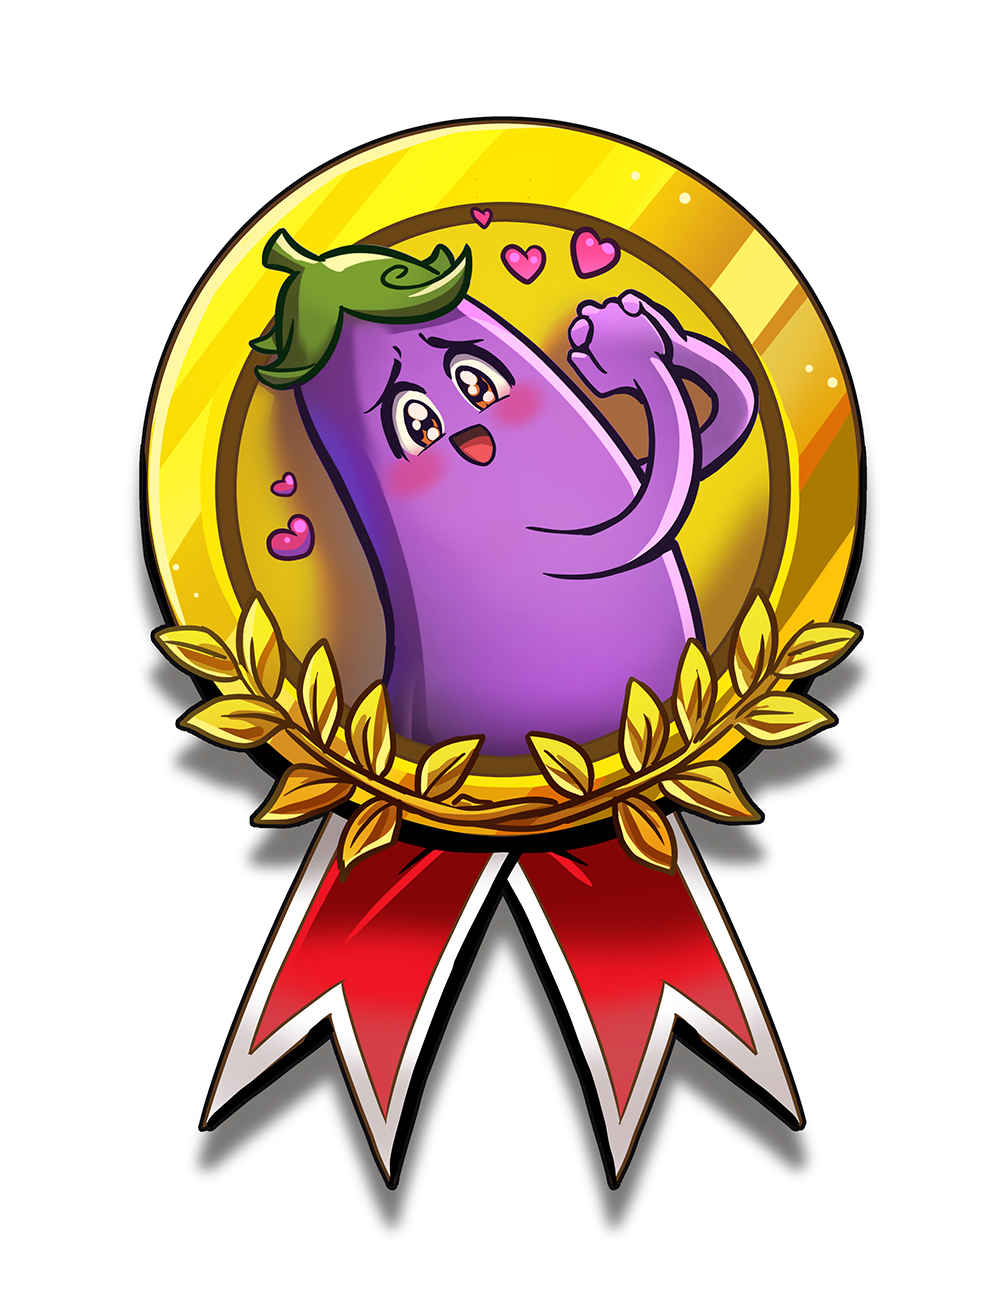 The Happy Eggplant Badge